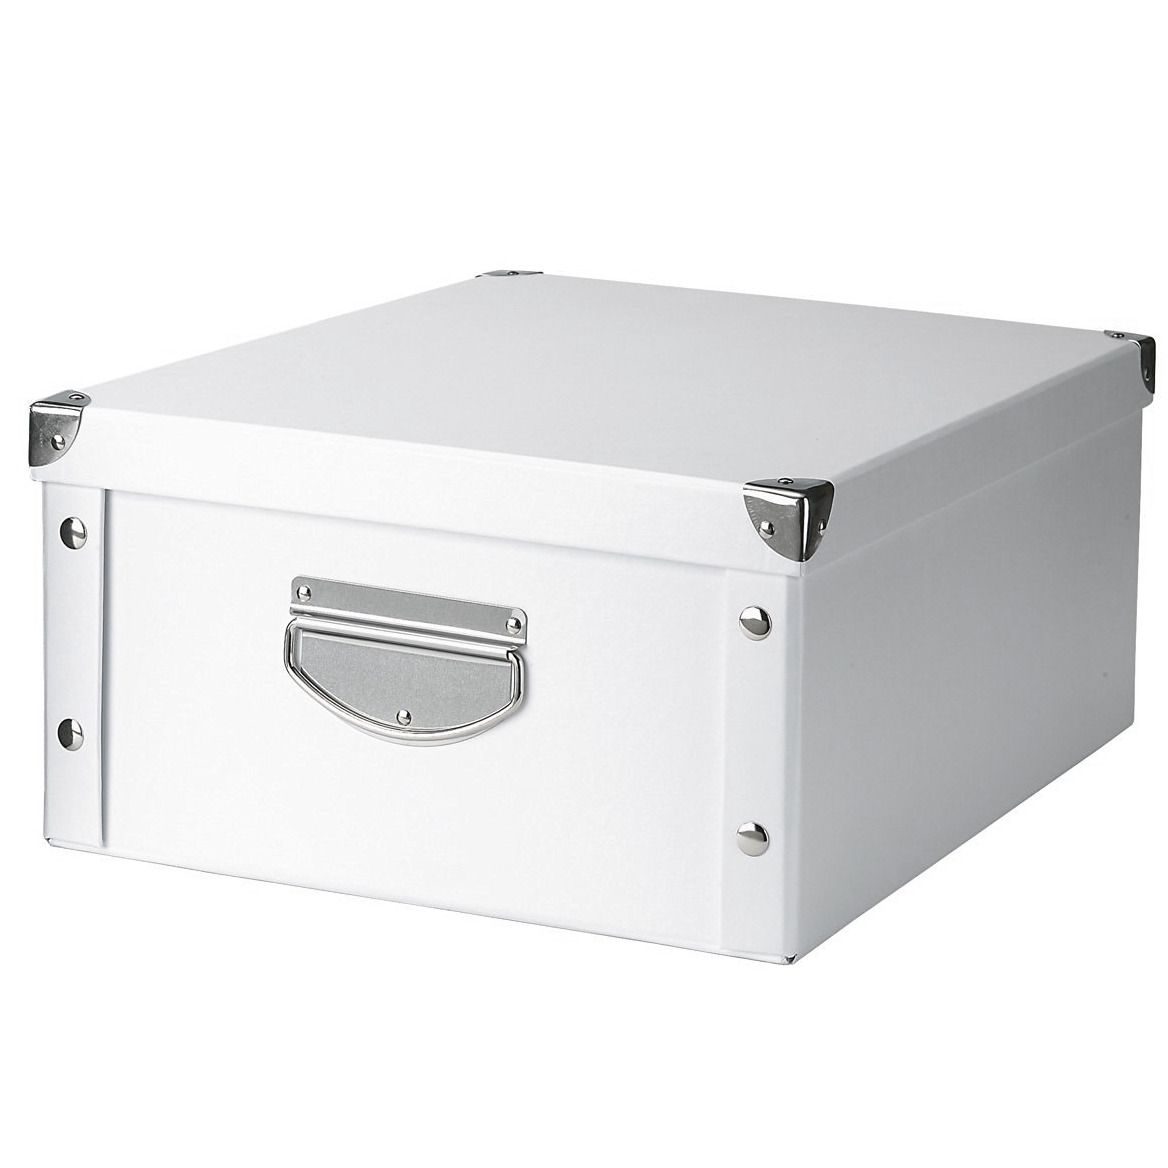 Box pro skladování, 40x33x17 cm, barva bílá, ZELLER - EMAKO.CZ s.r.o.